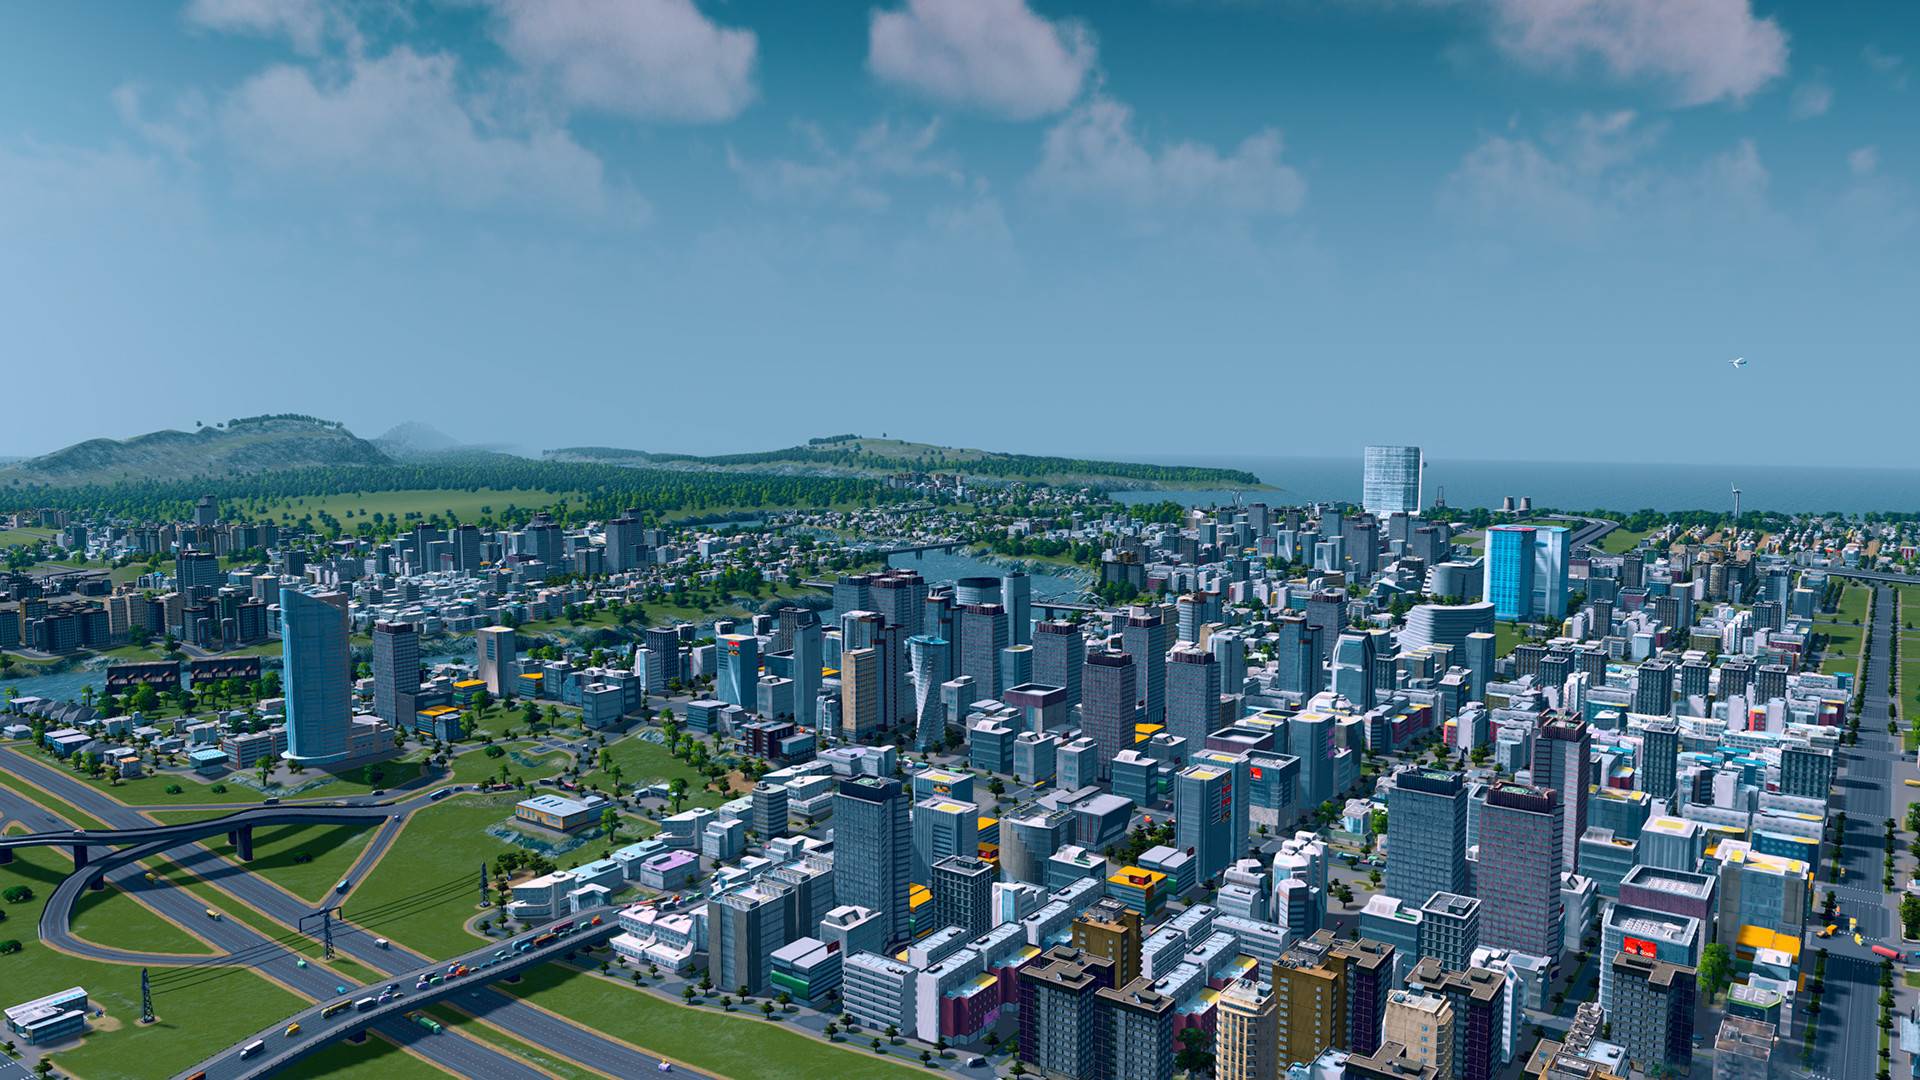 Beste spellen van de stadsopbouw: steden: Skylines. Afbeelding toont een uitgestrekte stad gevuld met wolkenkrabbers